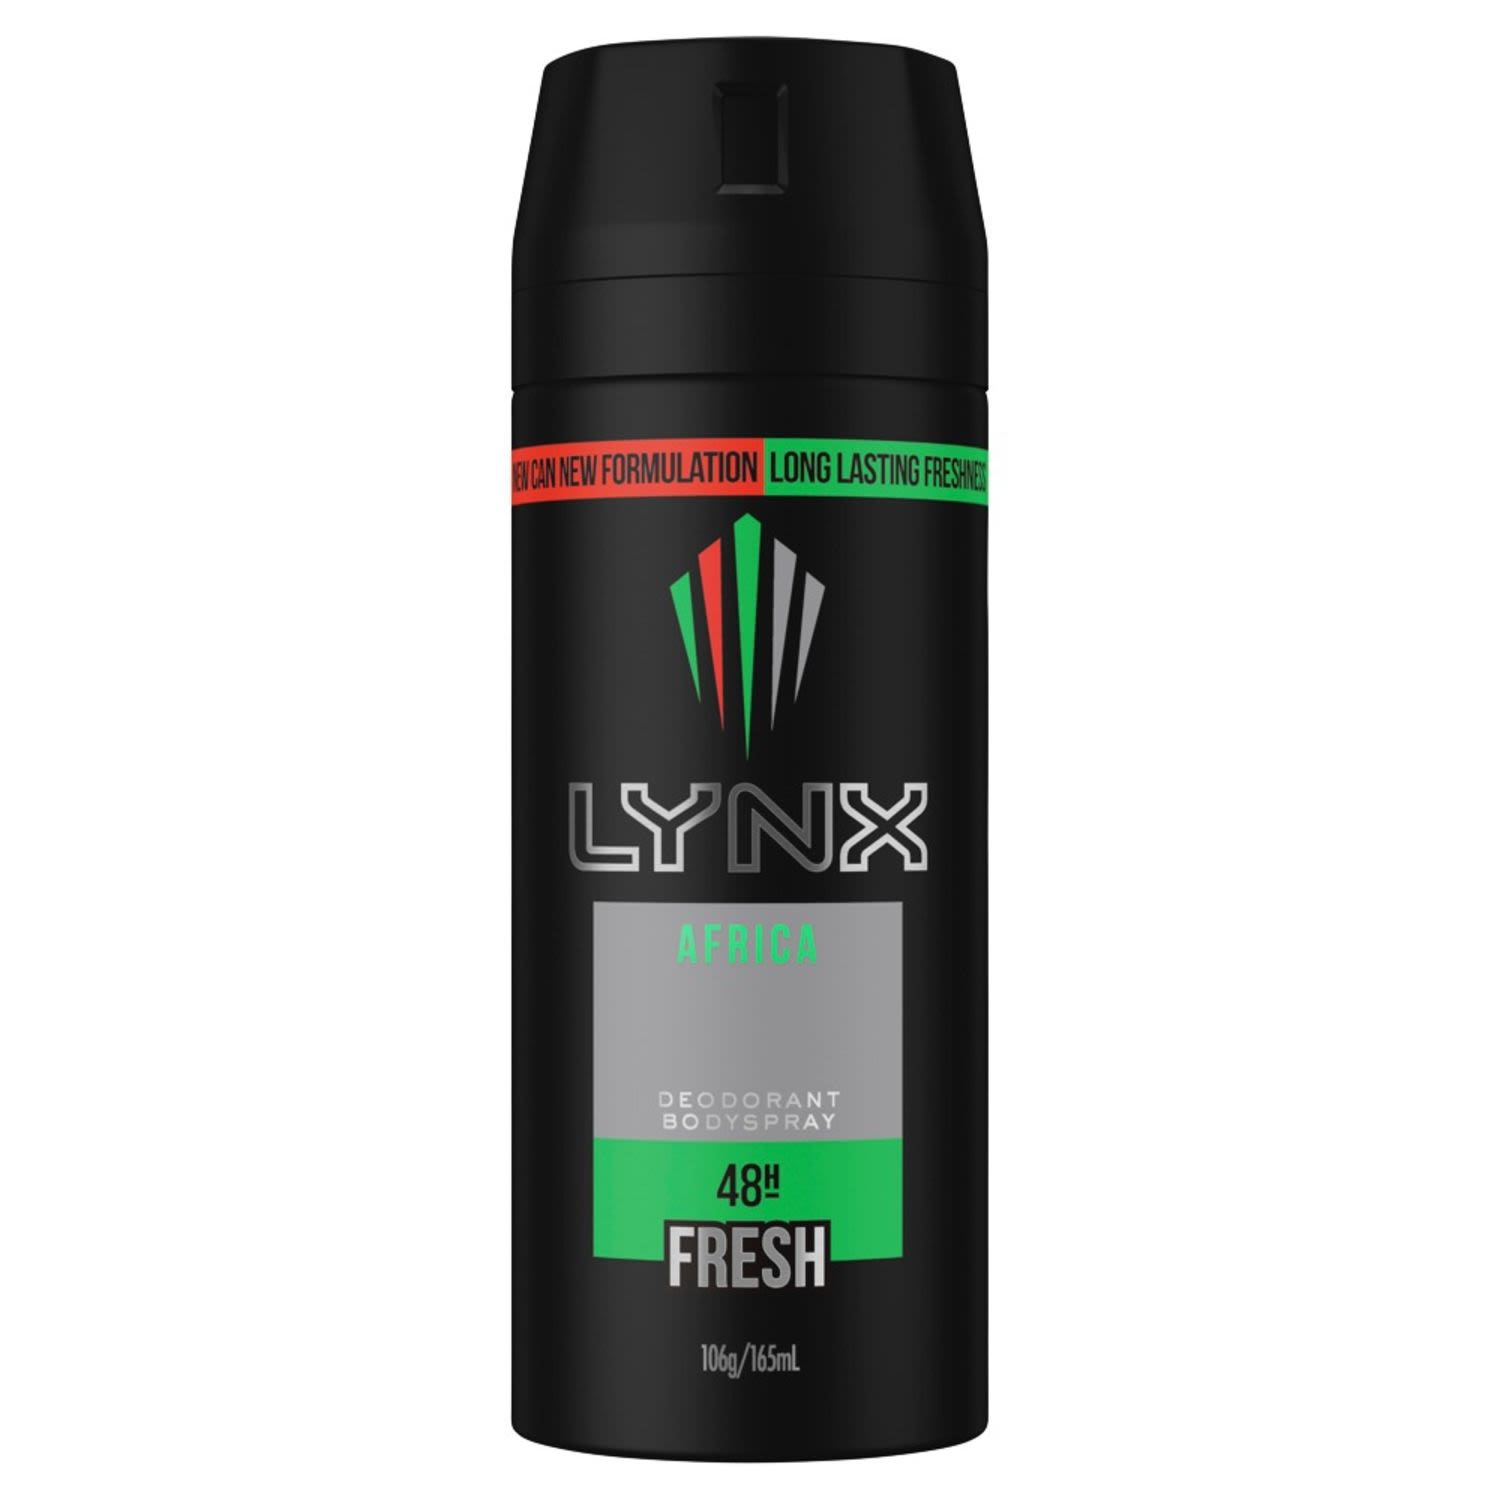 Lynx Africa Deodorant Bodyspray, 165 Millilitre